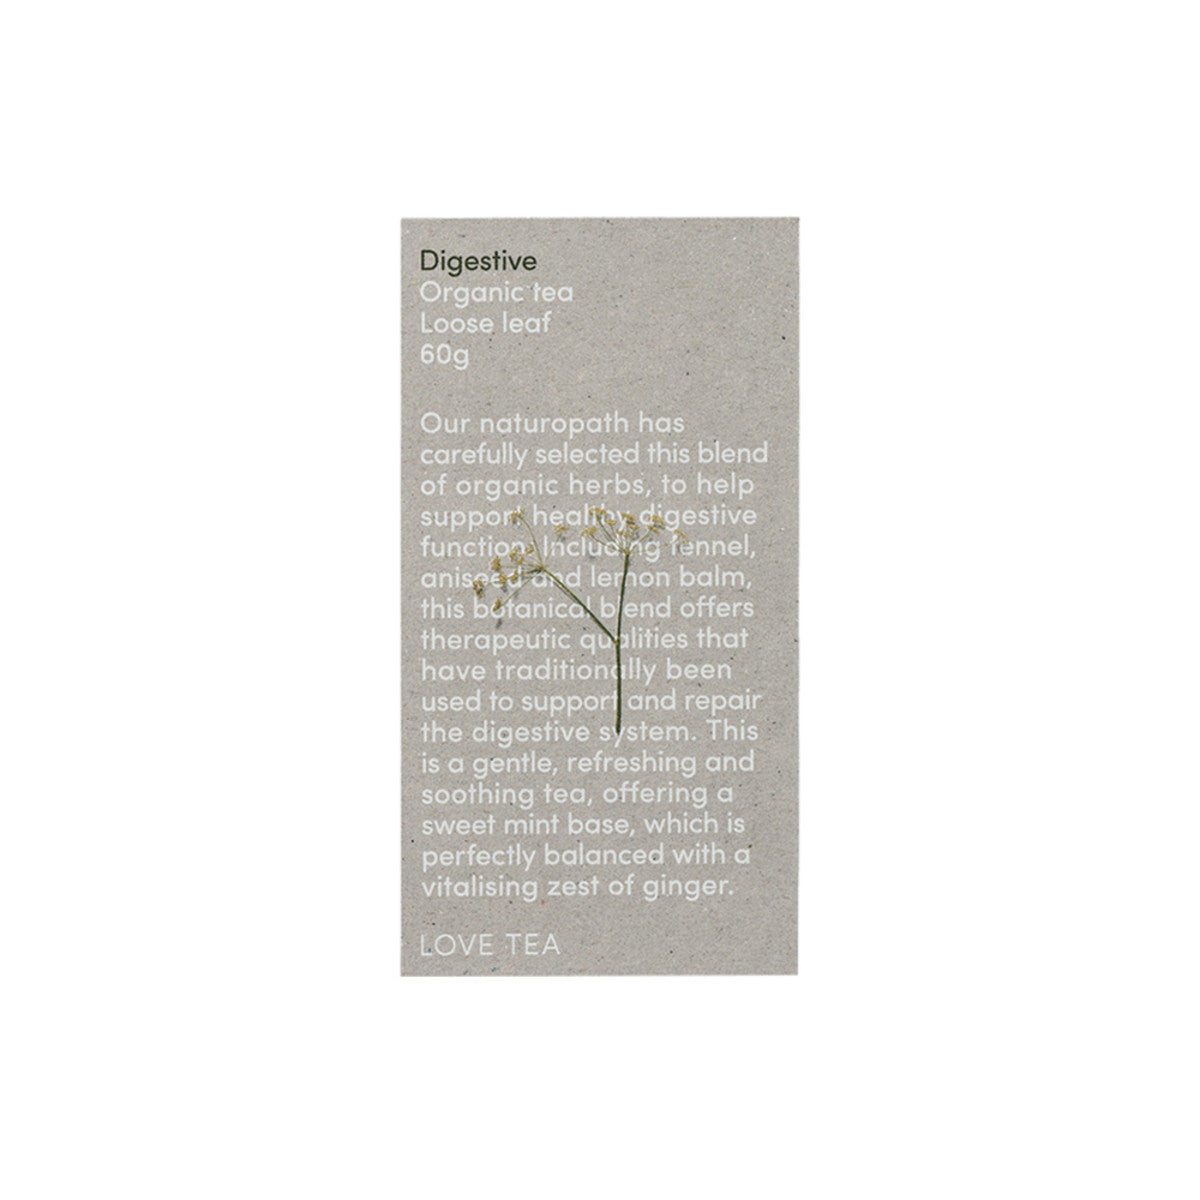 Love Tea - Organic Digestive Loose Leaf